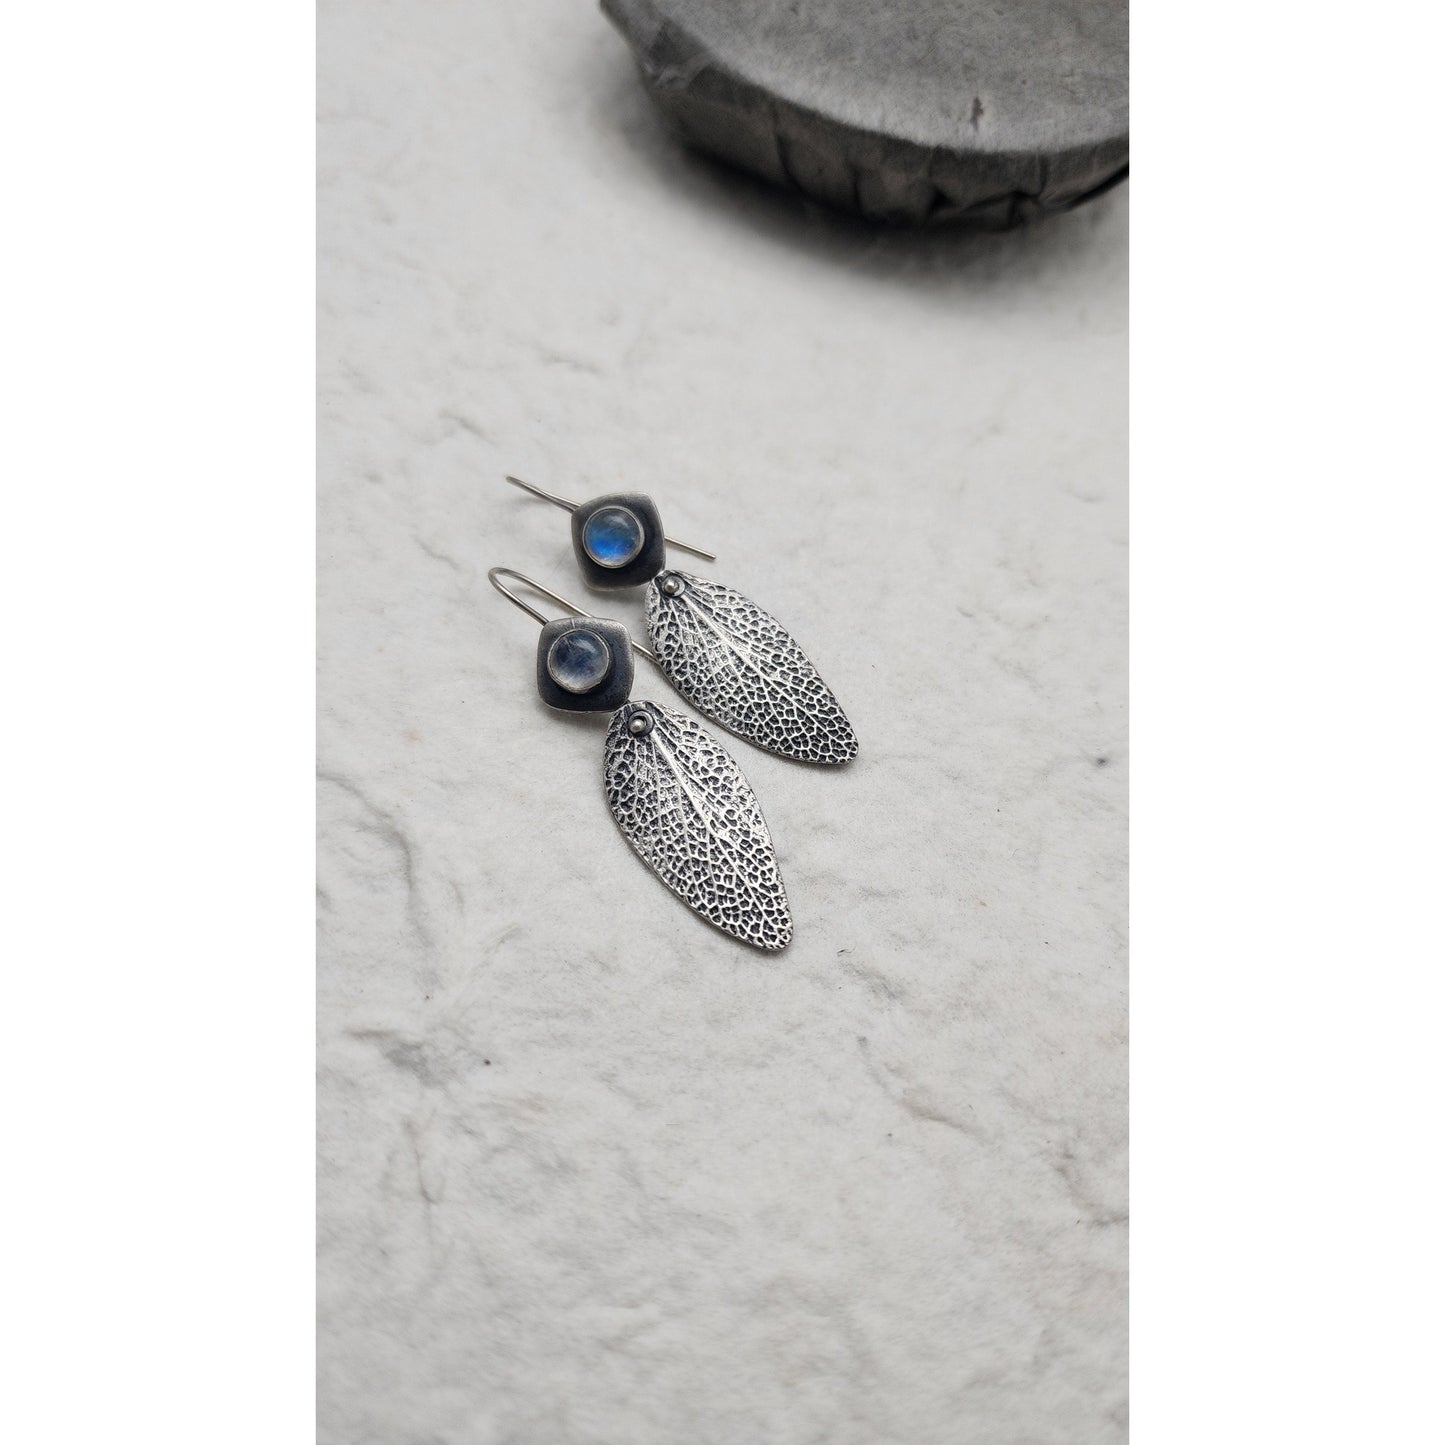 Sage Moonstone earrings